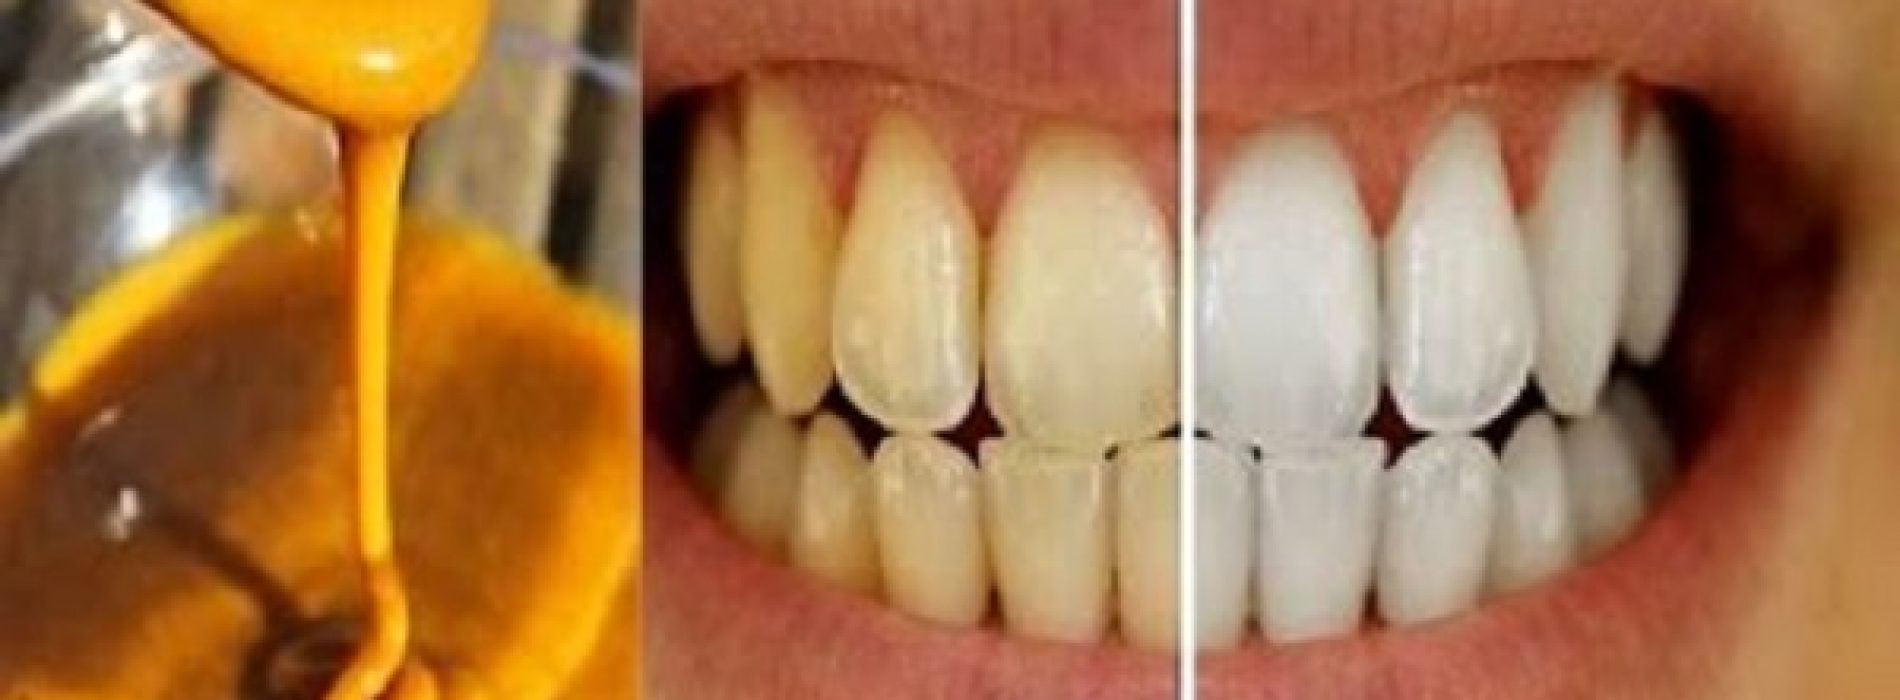 Deze zelfgemaakte tandpasta draait tandvleesaandoeningen terug en maakt tanden witter!